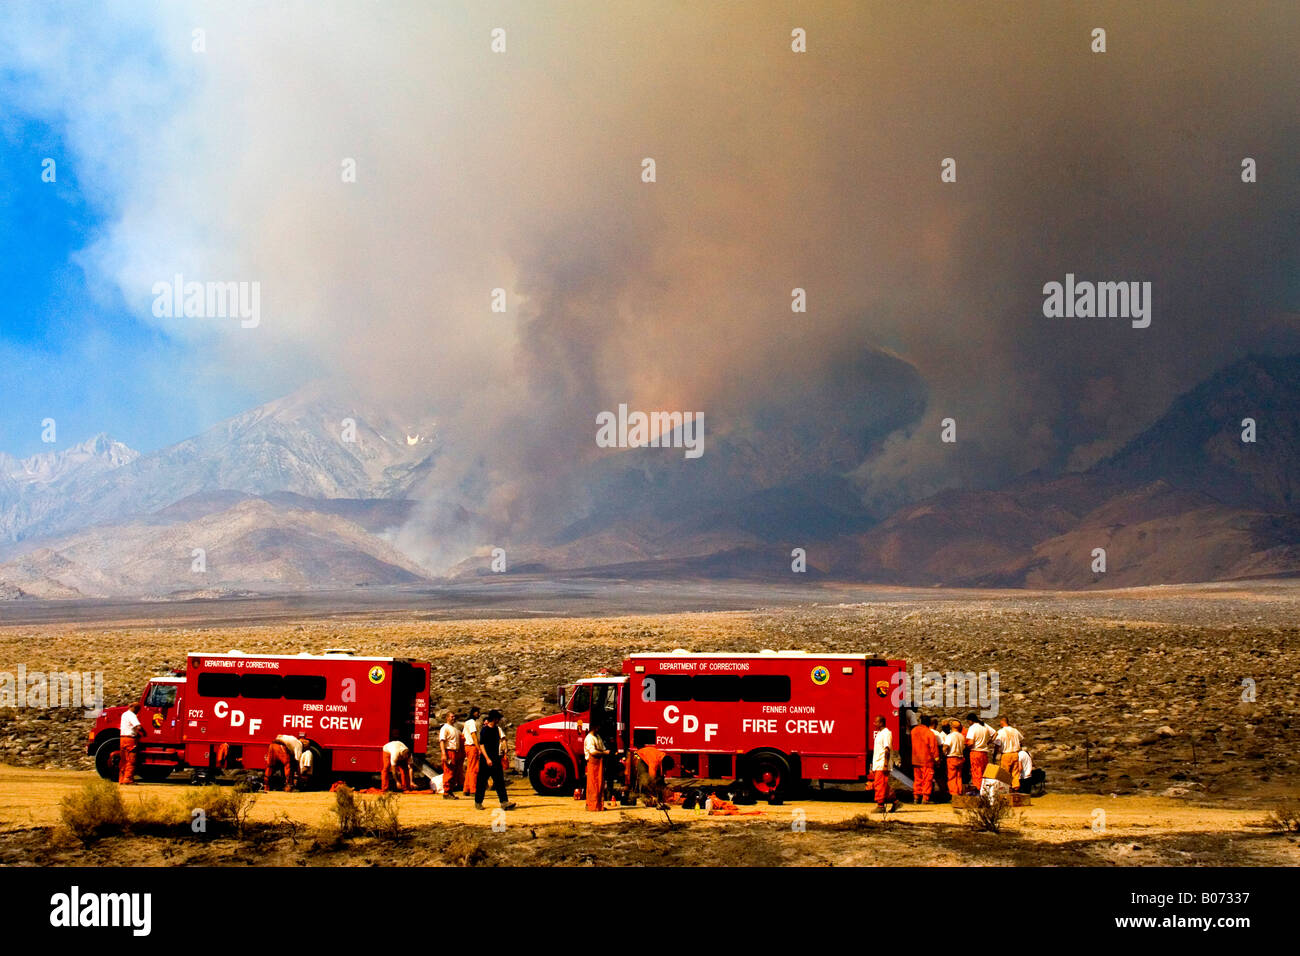 Équipe d'incendie après l'incendie de forêt massive sur l'autoroute 395 à l'est de la Sierra Nevada Mts. Juillet 2007 Banque D'Images